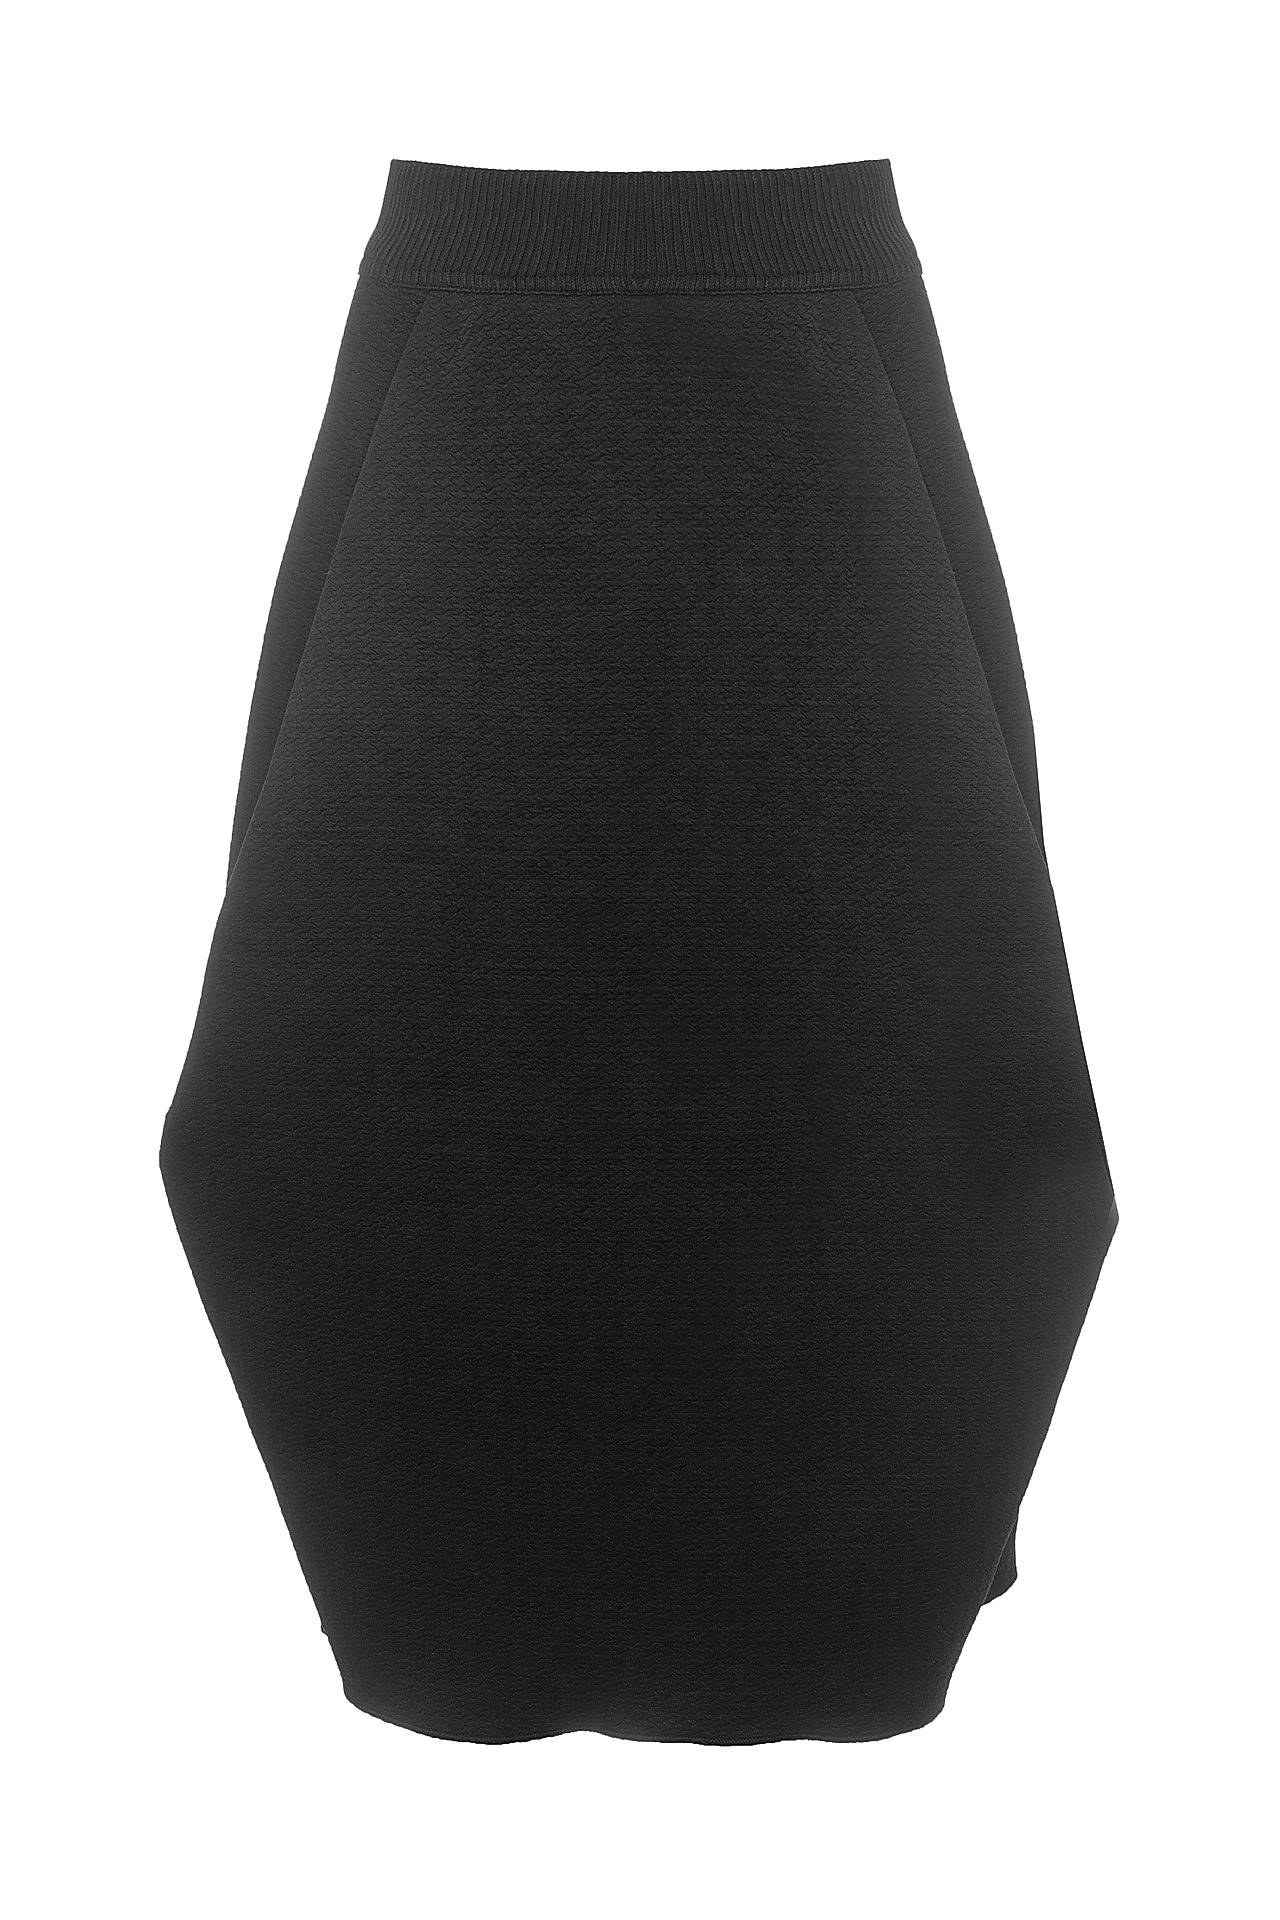 Одежда женская Юбка IMPERIAL (G9997973/16.1). Купить за 5995 руб.